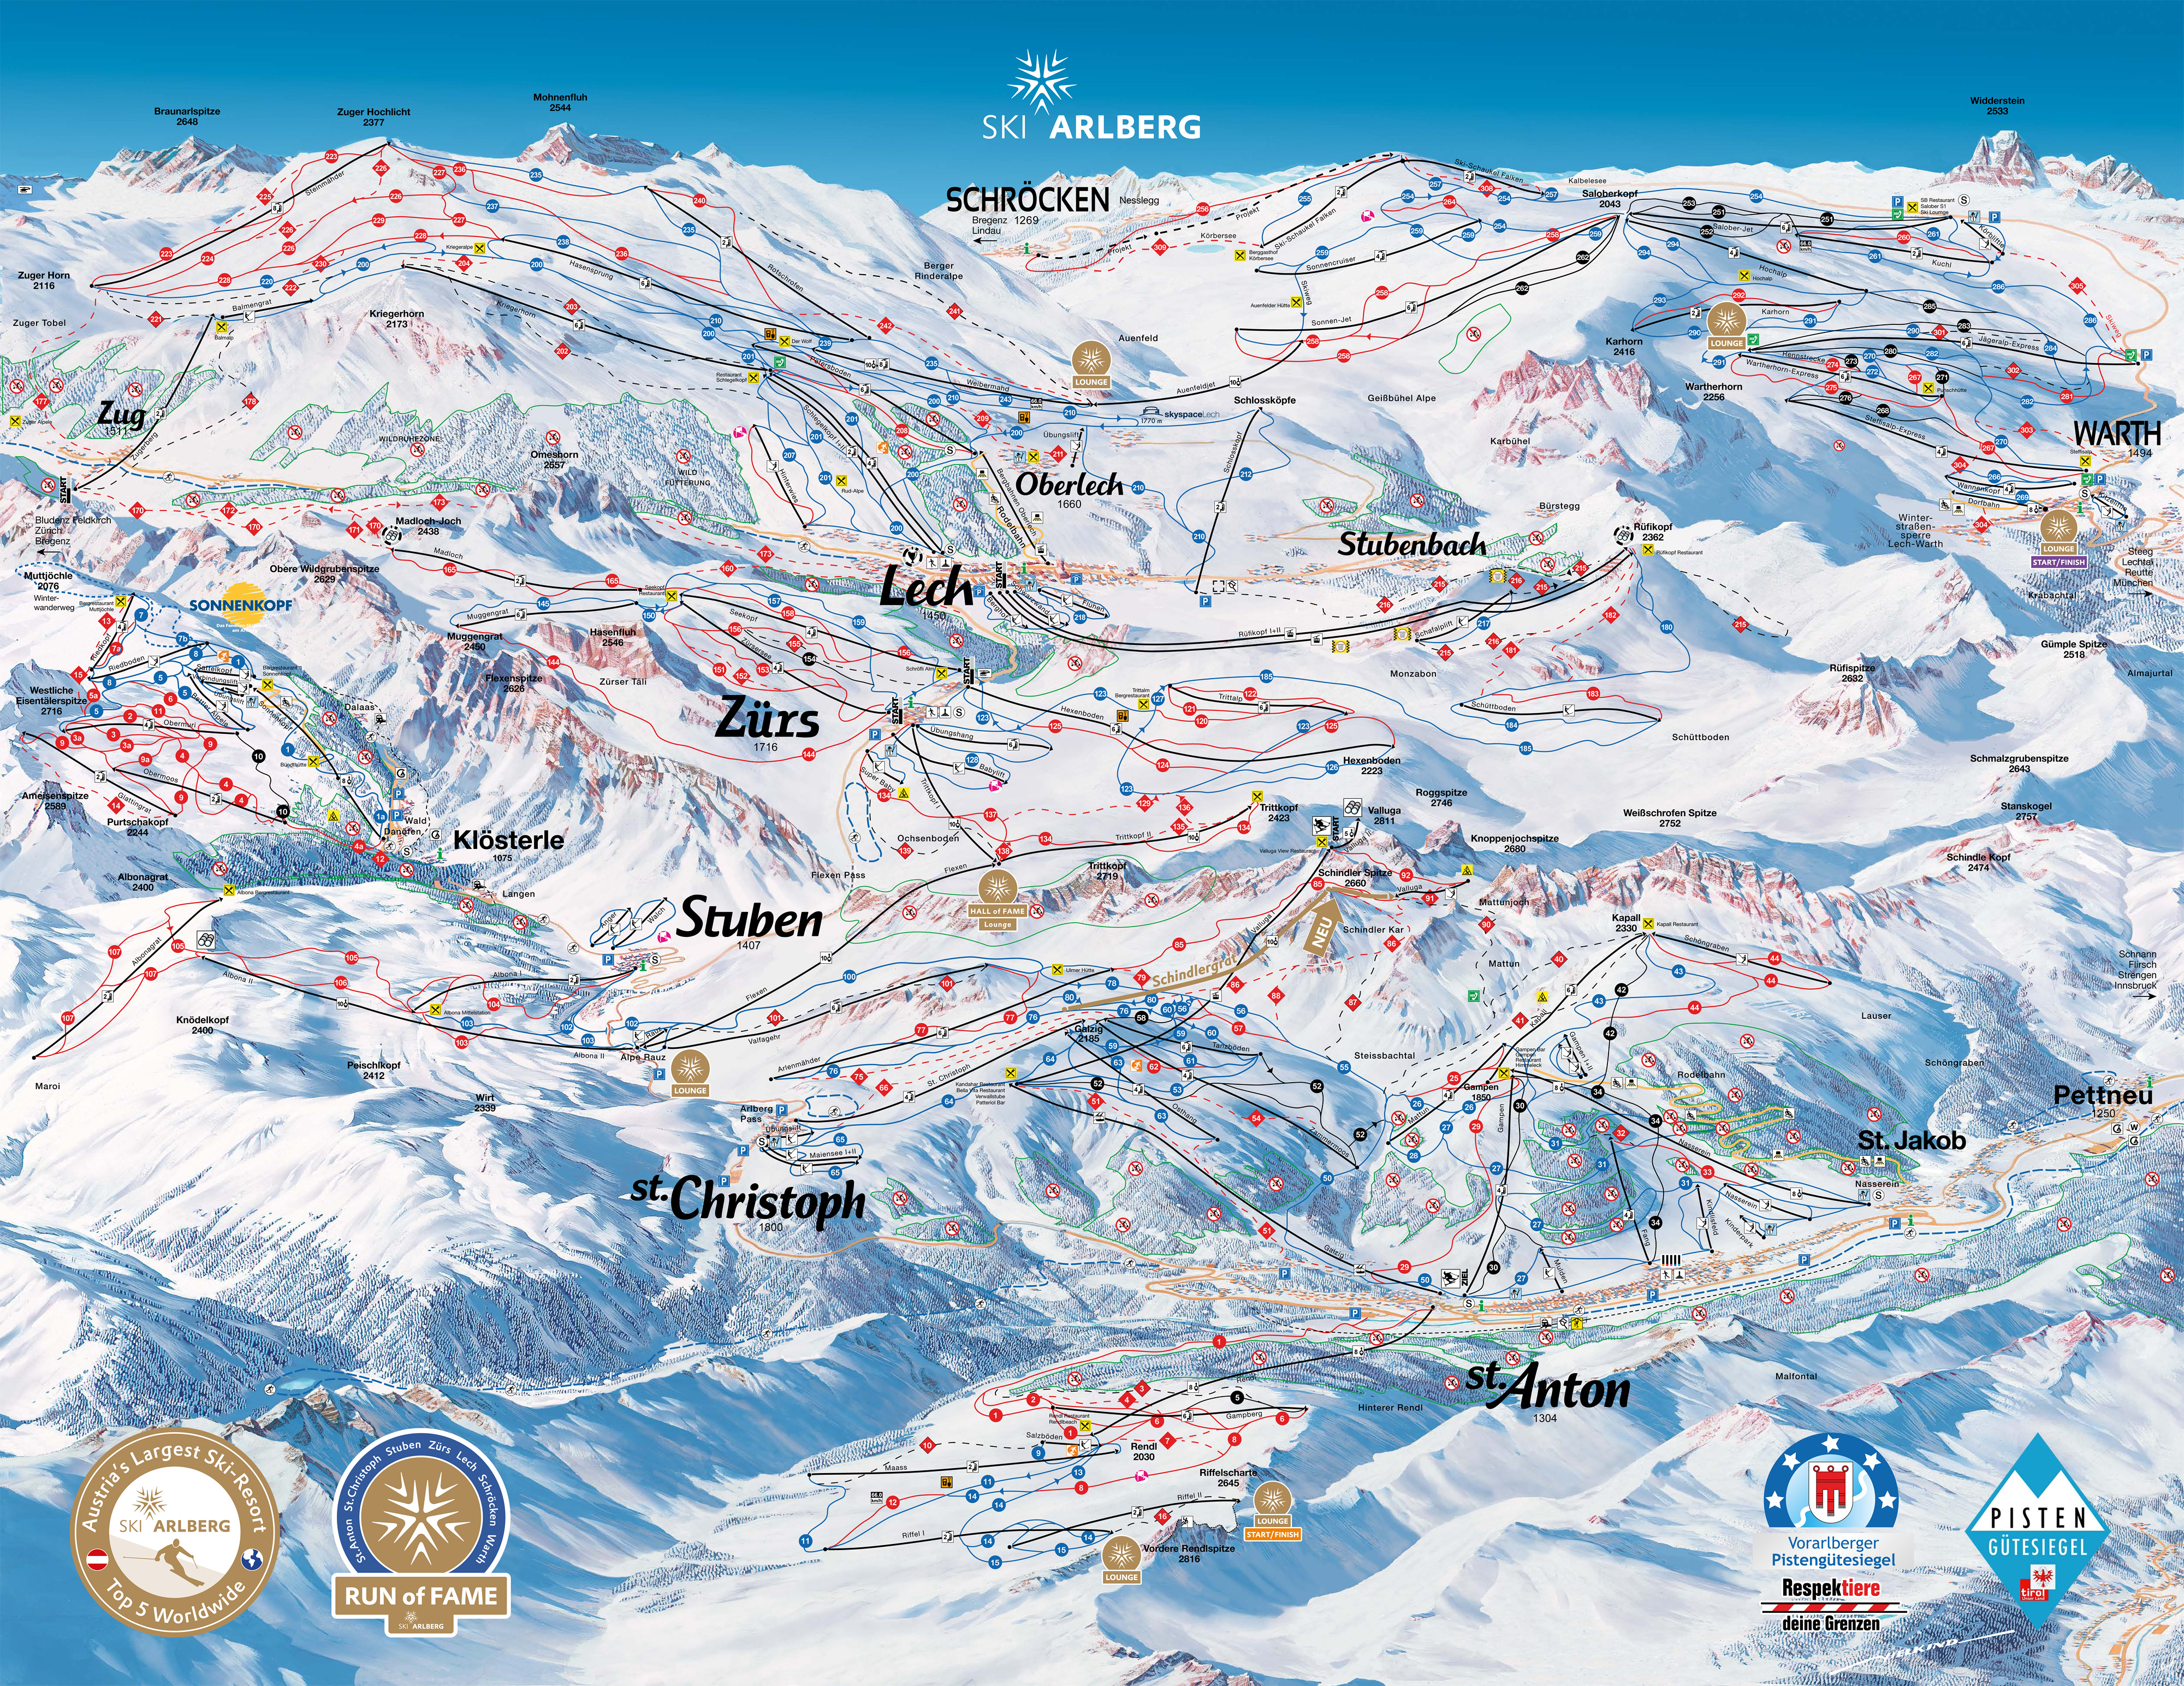 http://skiexpert.ru/lib/img/resort/49/skimap.jpg